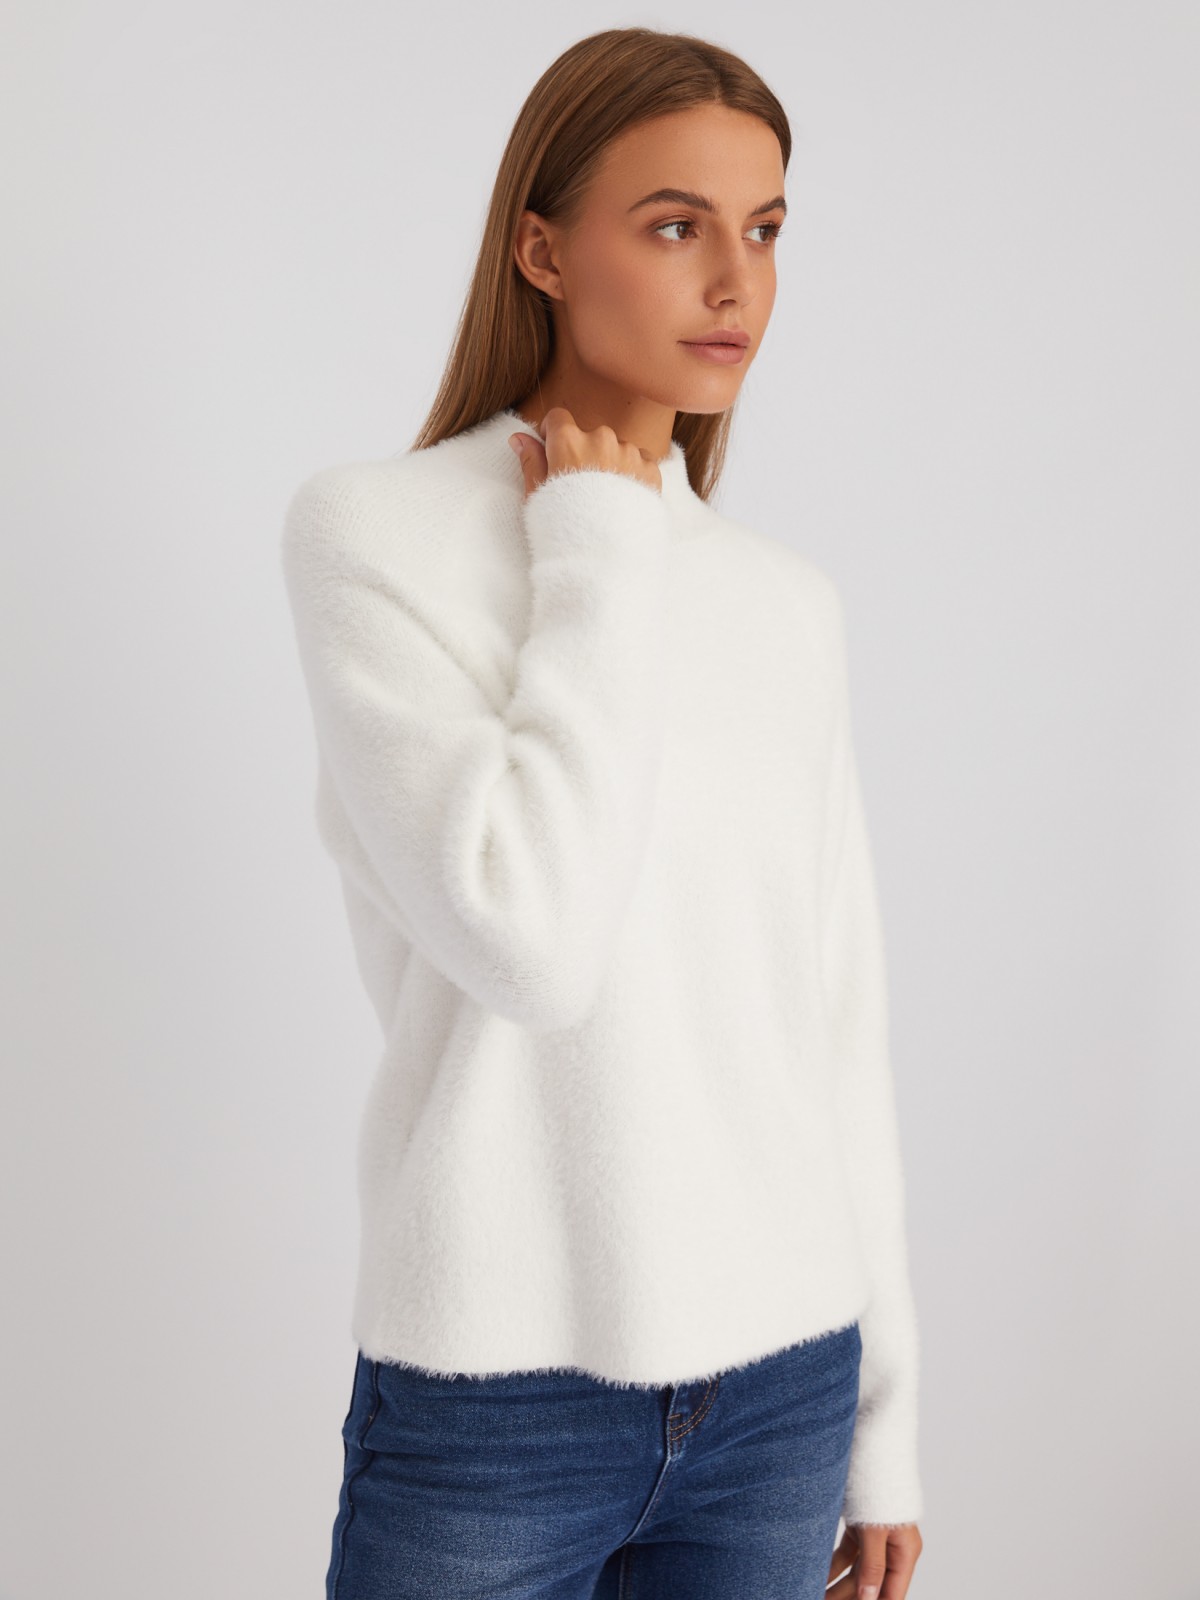 Пушистый вязаный свитер с воротником-стойкой zolla белого цвета